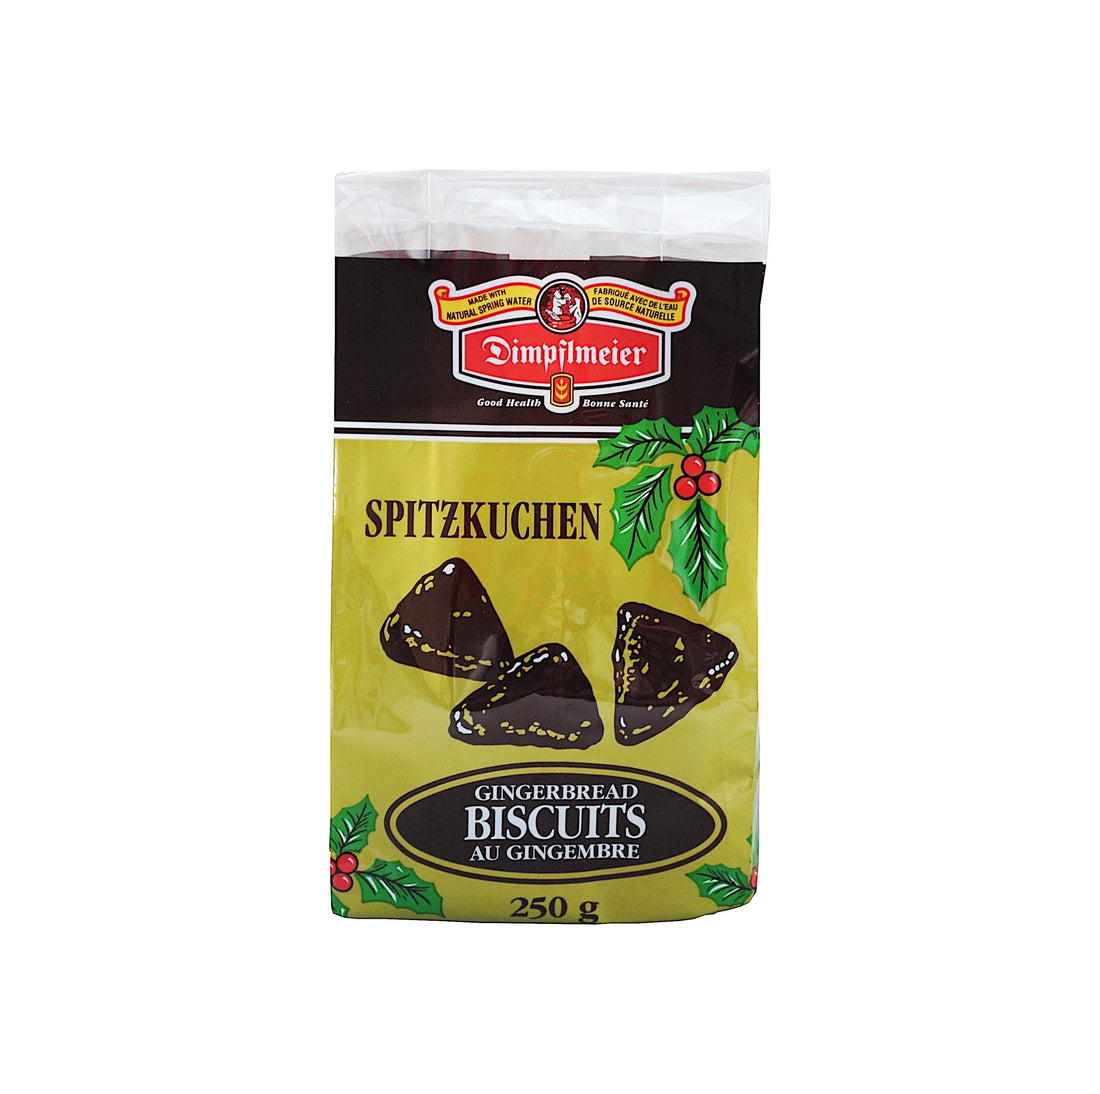 Spitzkuchen-Gingerbread Biscuits